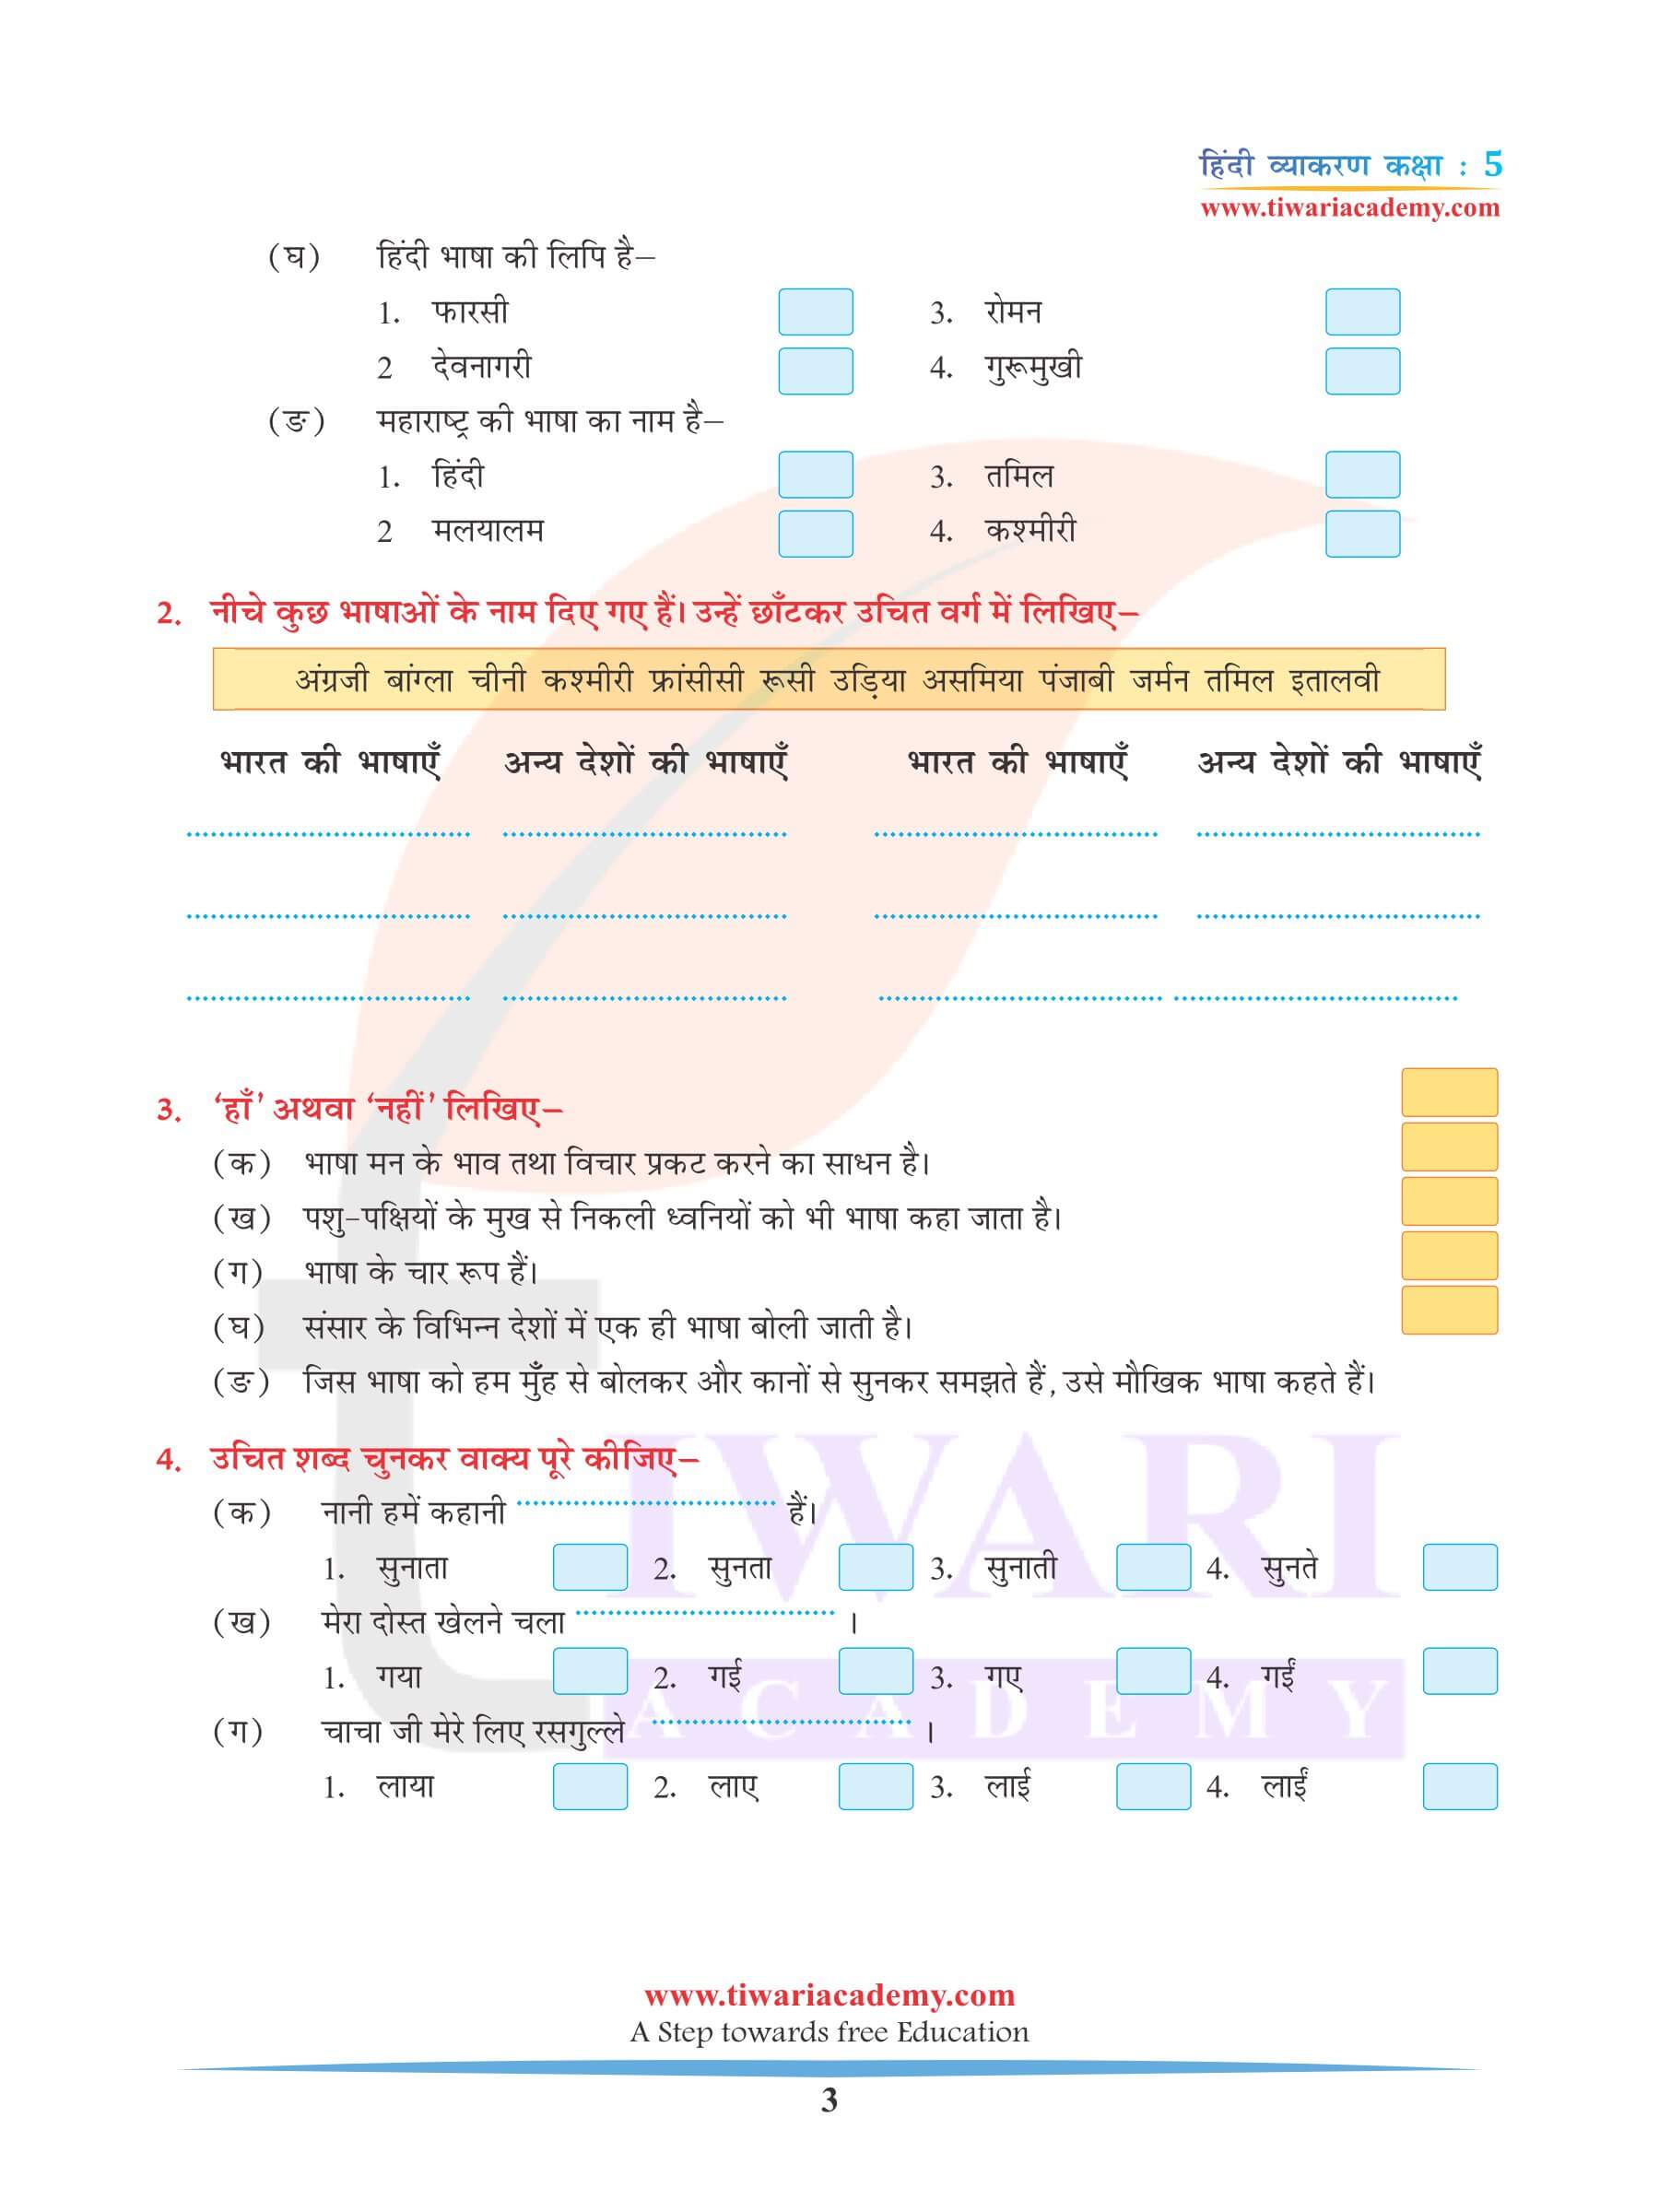 कक्षा 5 हिंदी व्याकरण अध्याय 1 भाषा और व्याकरण के भेद